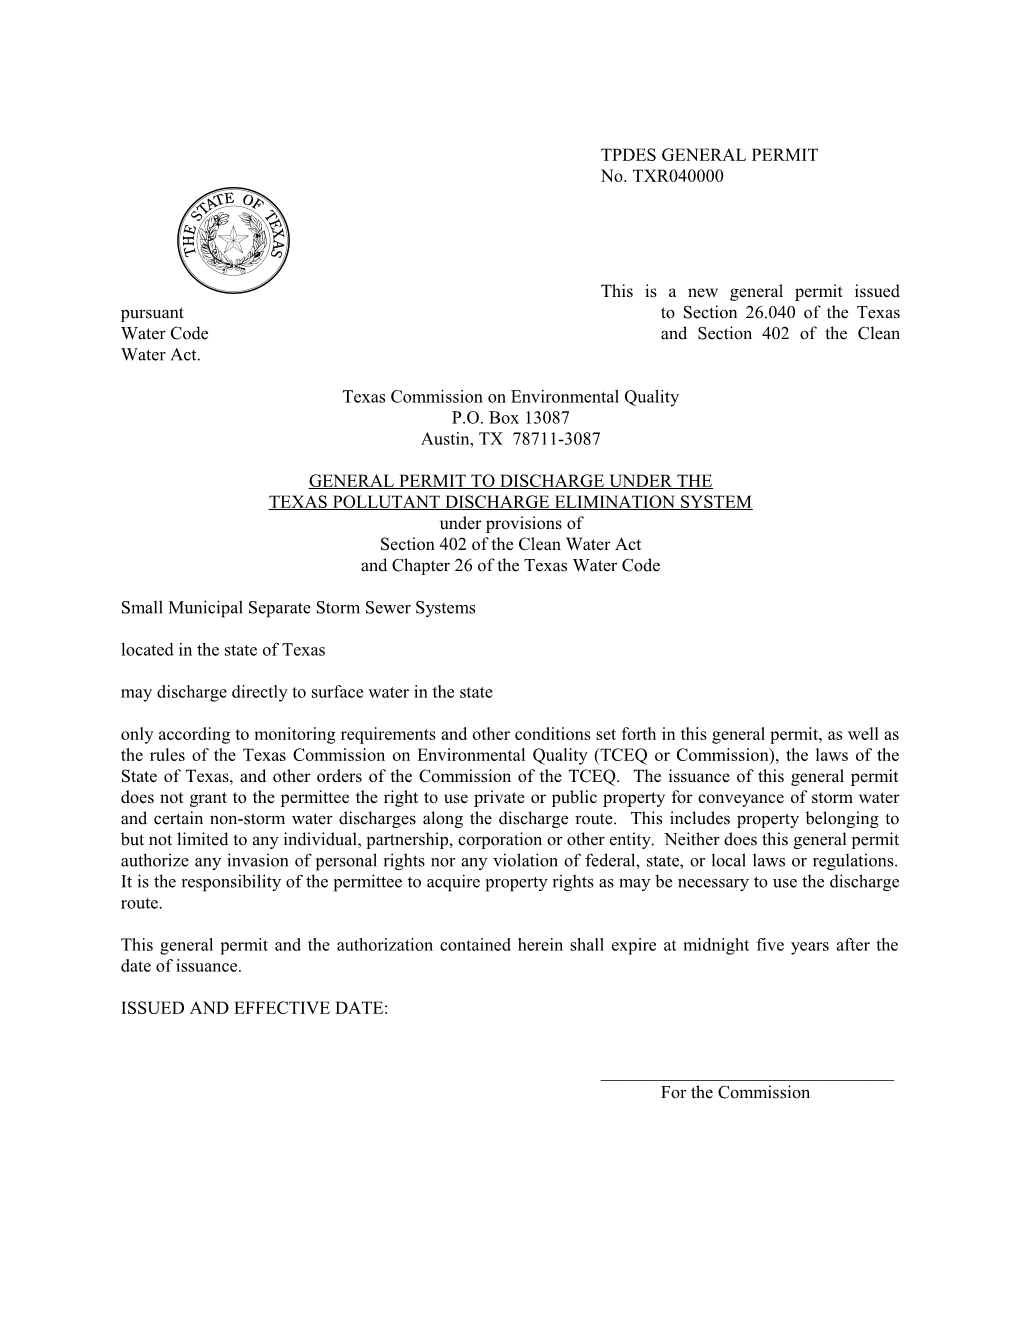 TPDES General Permit No. TXR040000